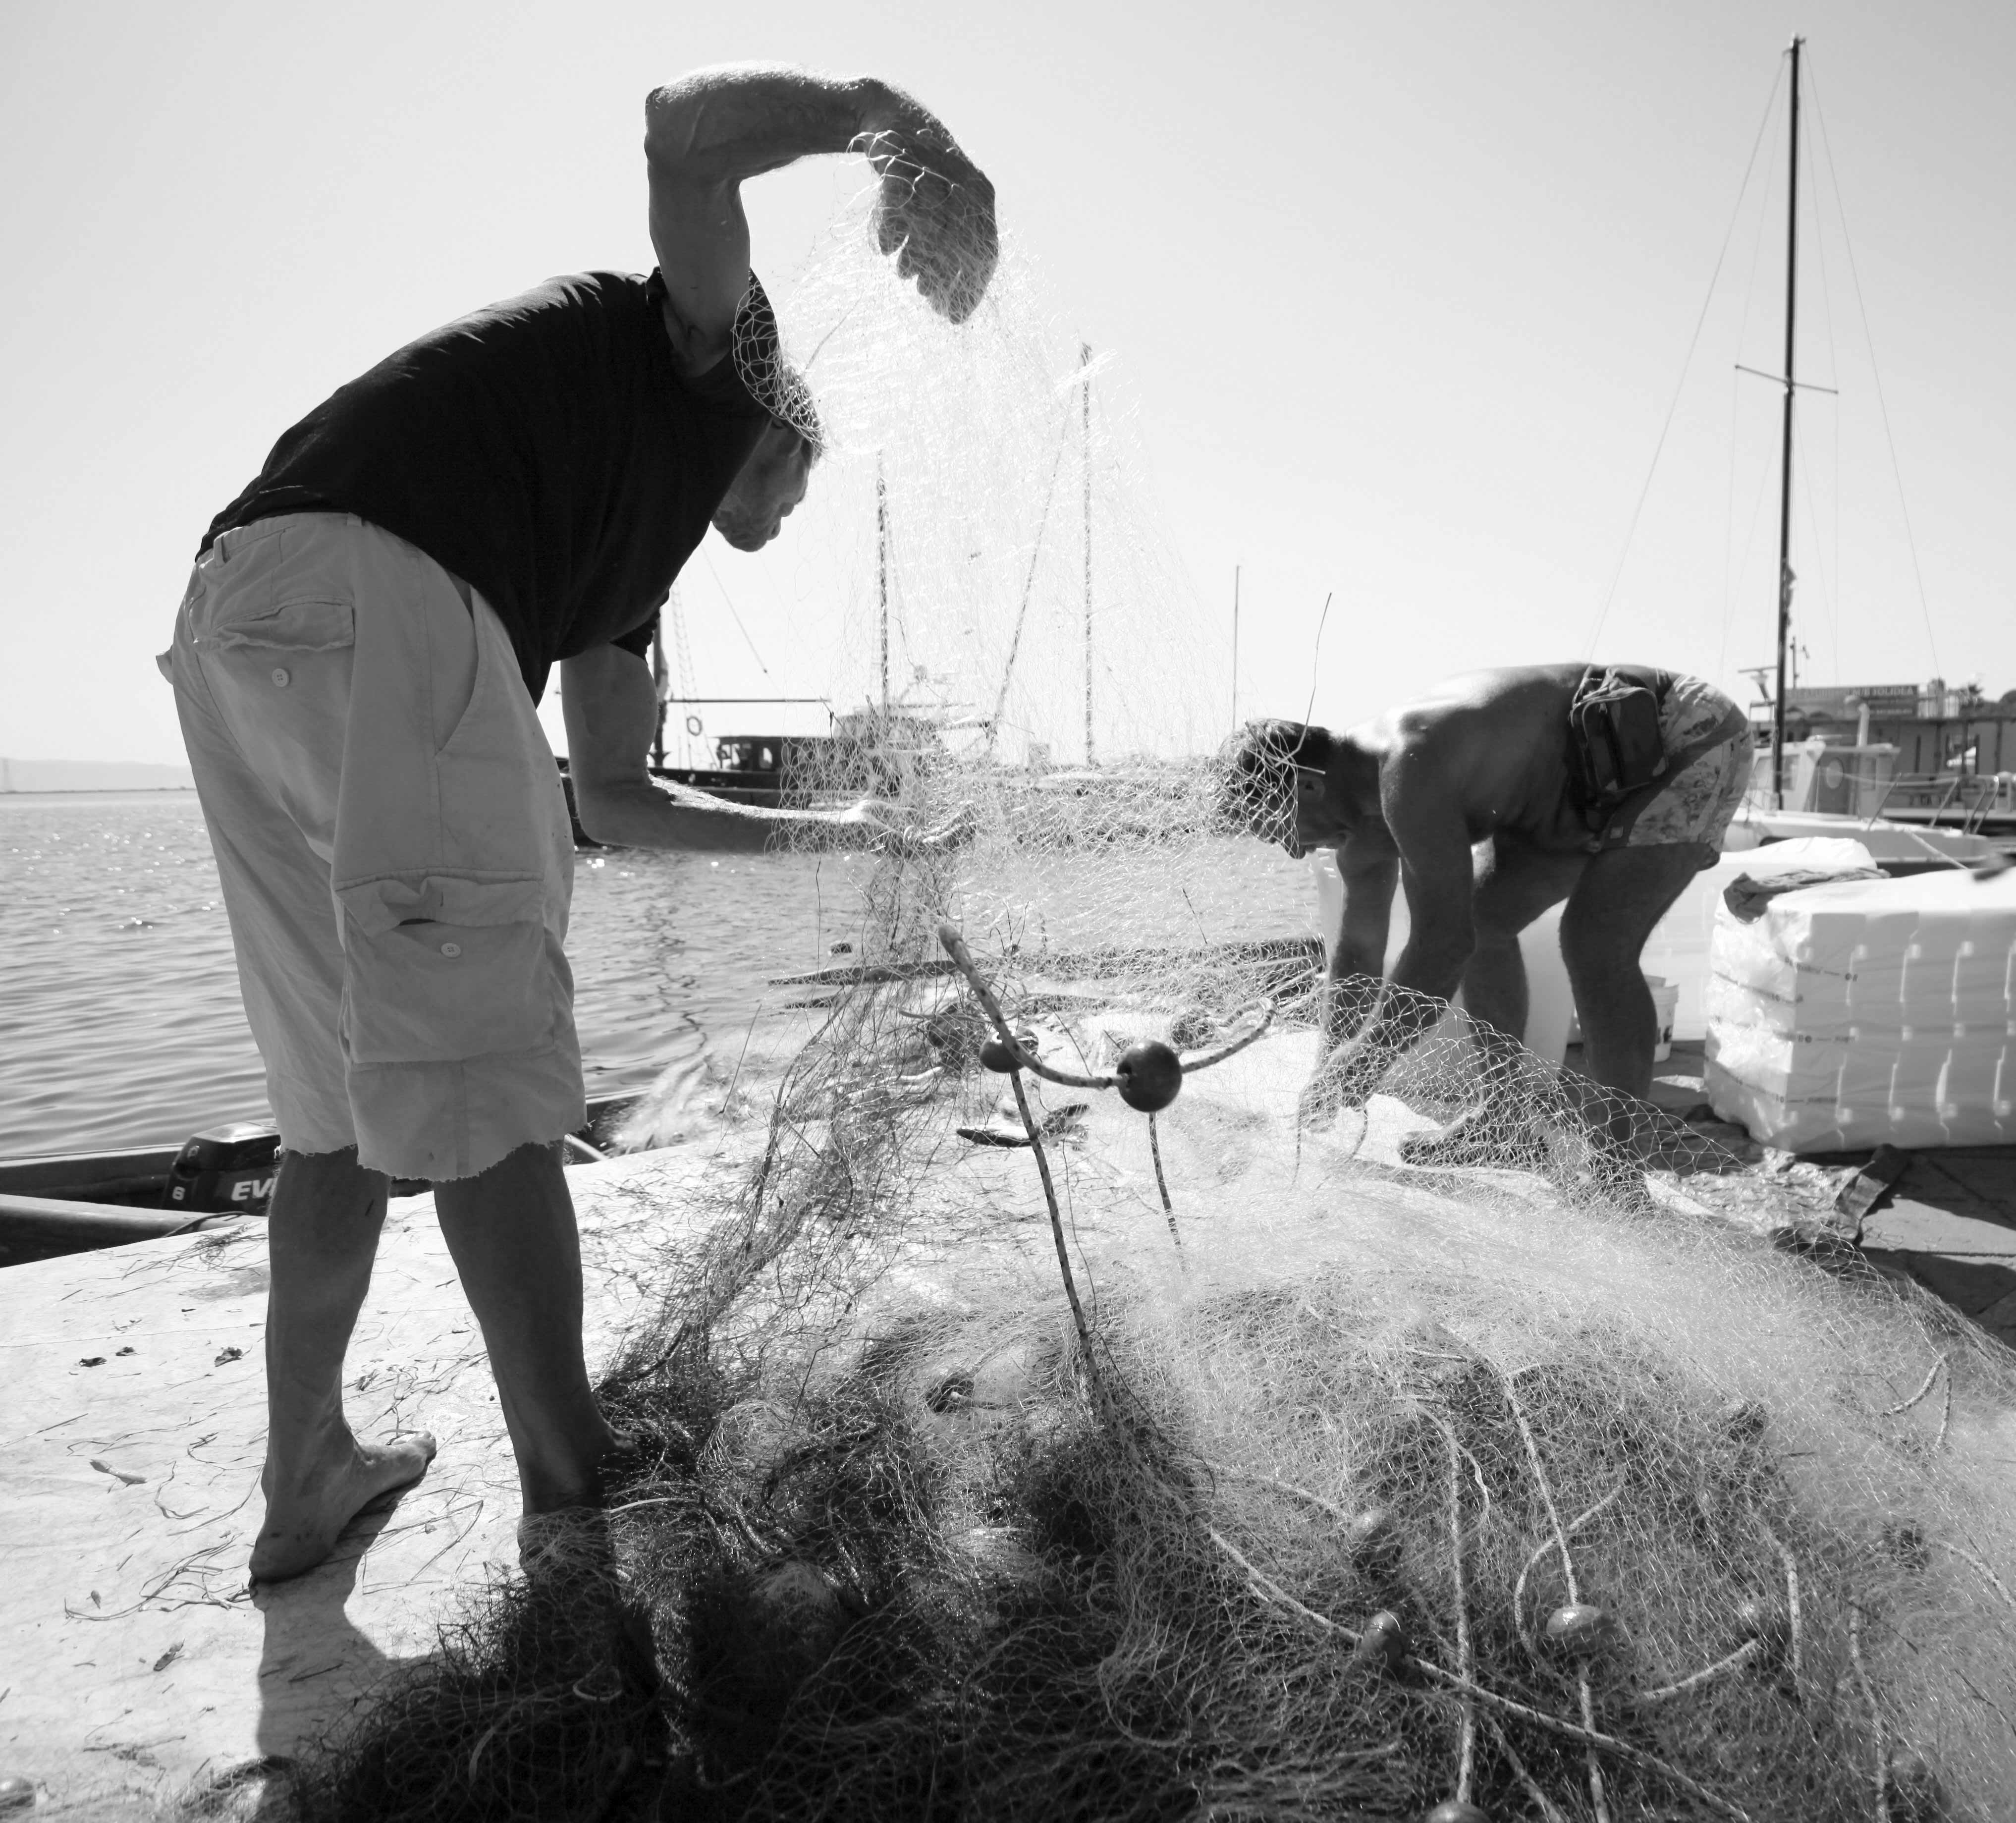 Pescatori: molo di Sant'Antioco / Fishermen: harbour, Sant'Antioco